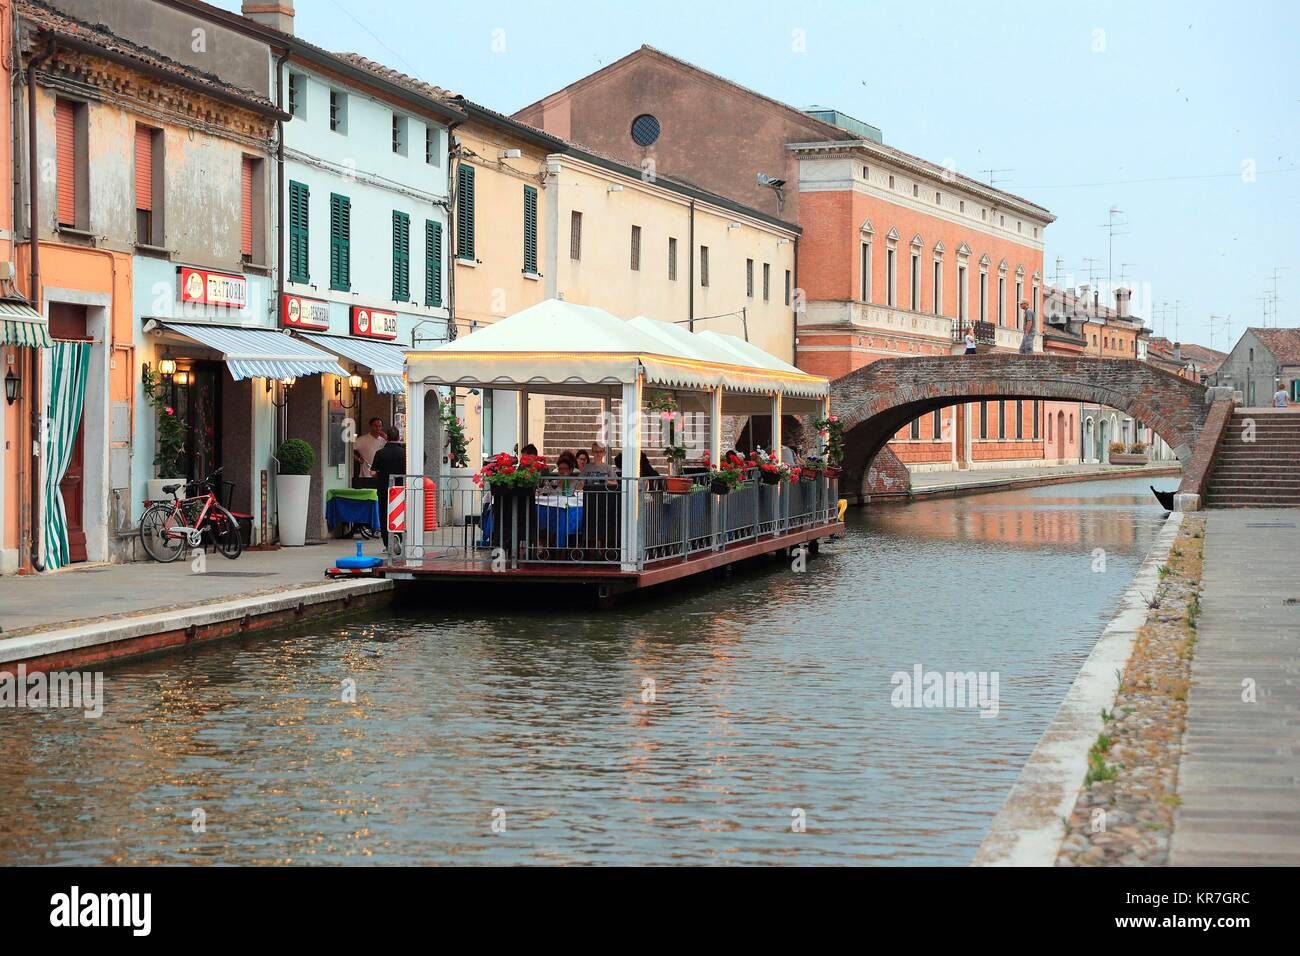 The Migliarino Canal  in Comacchio Village, Ferrara, Italy. June 14, 2017    Credit © Nuccio Goglia/Sintesi/Alamy Stock Photo Stock Photo